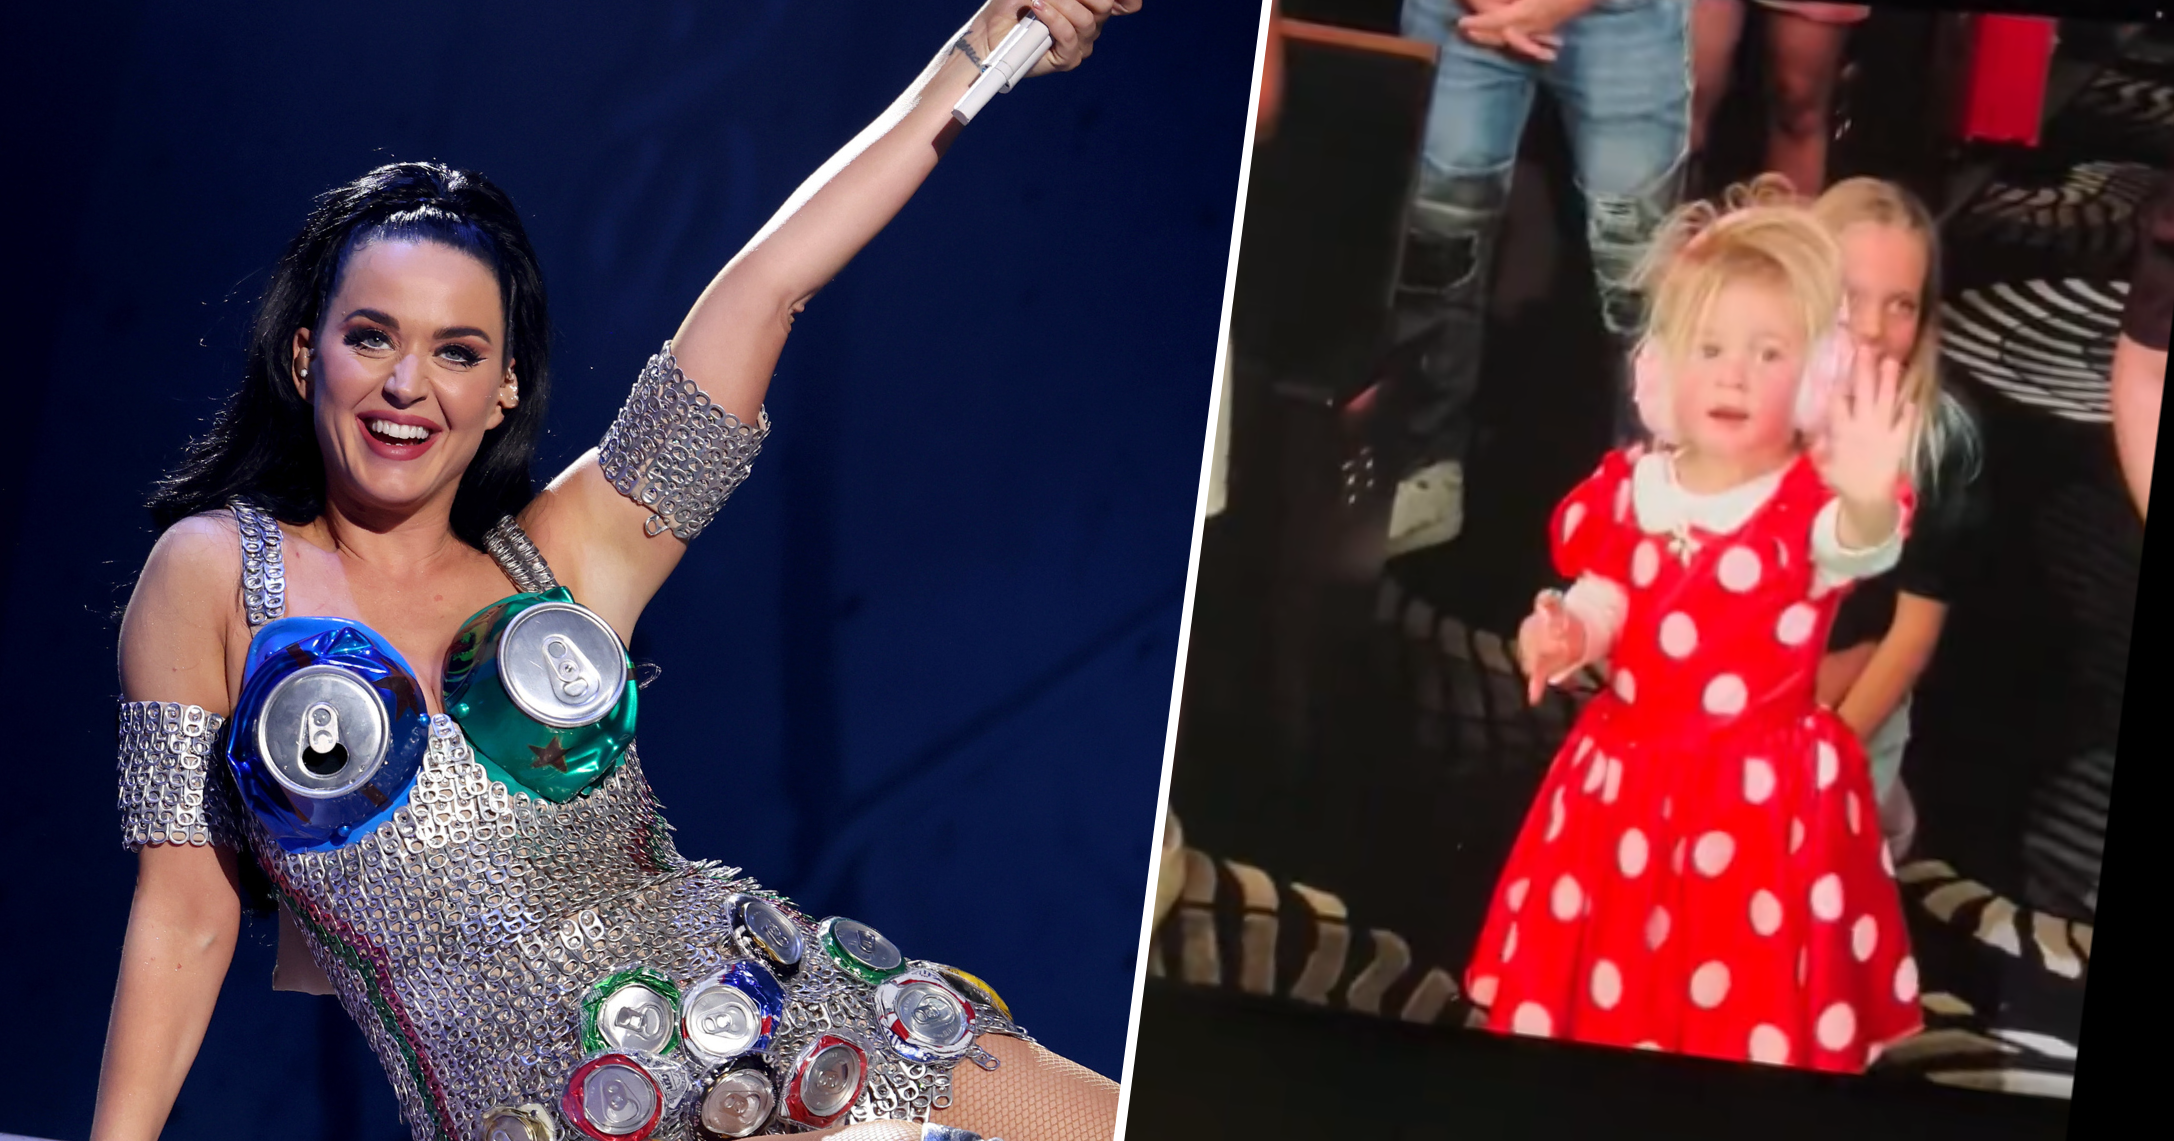 Hija de Katy Perry hace su primera aparición pública en Las Vegas - Grupo Radio Guaymas